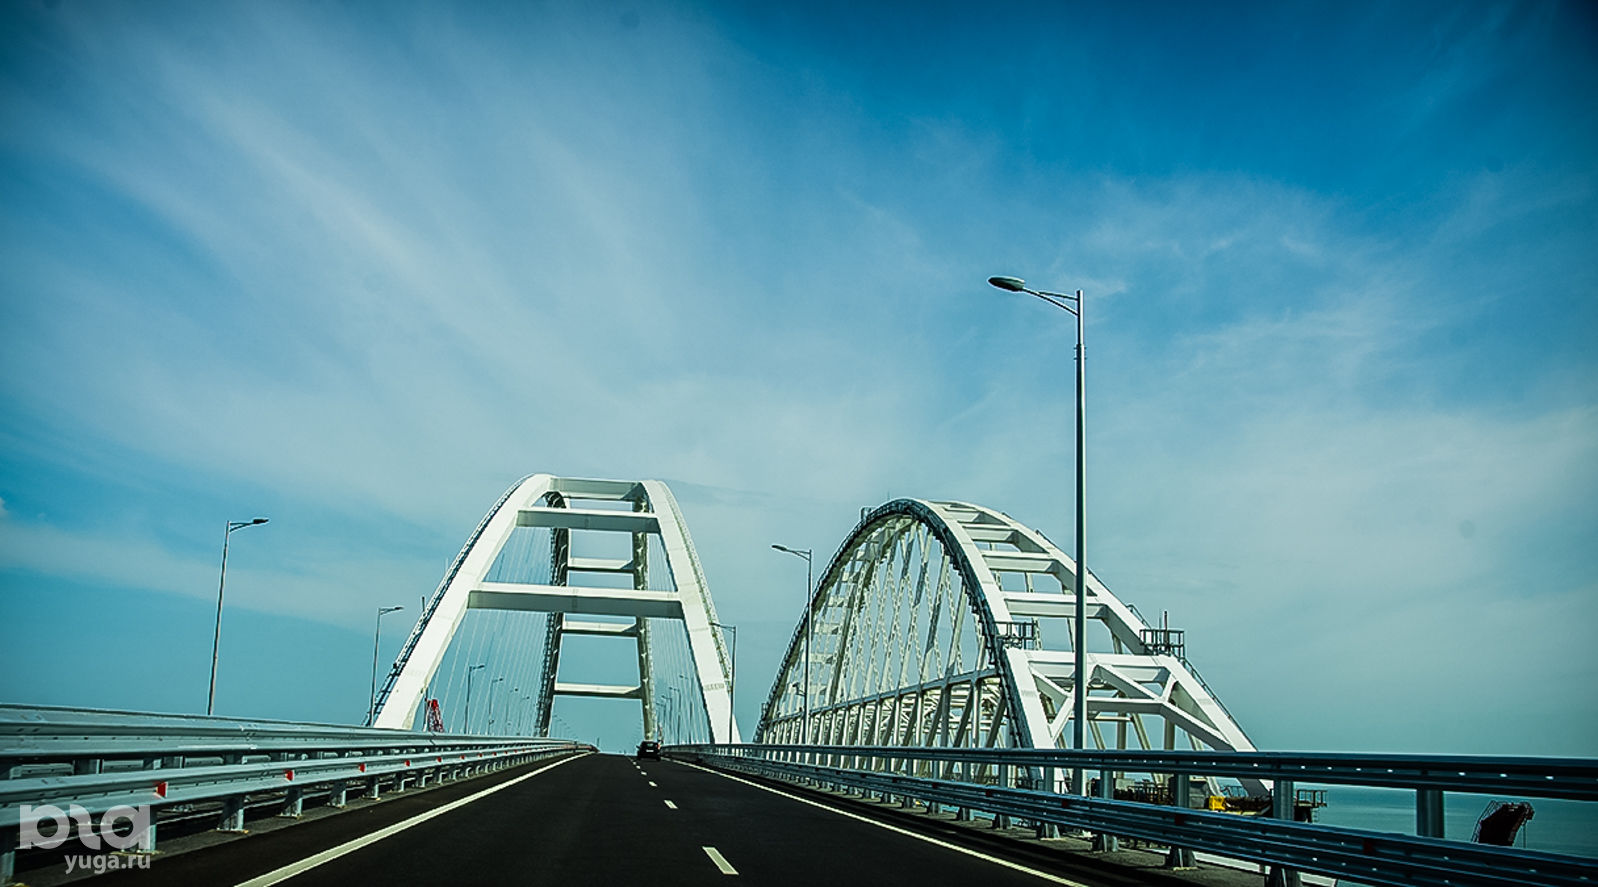 Крымский мост © Фото Евгения Мельченко, Юга.ру